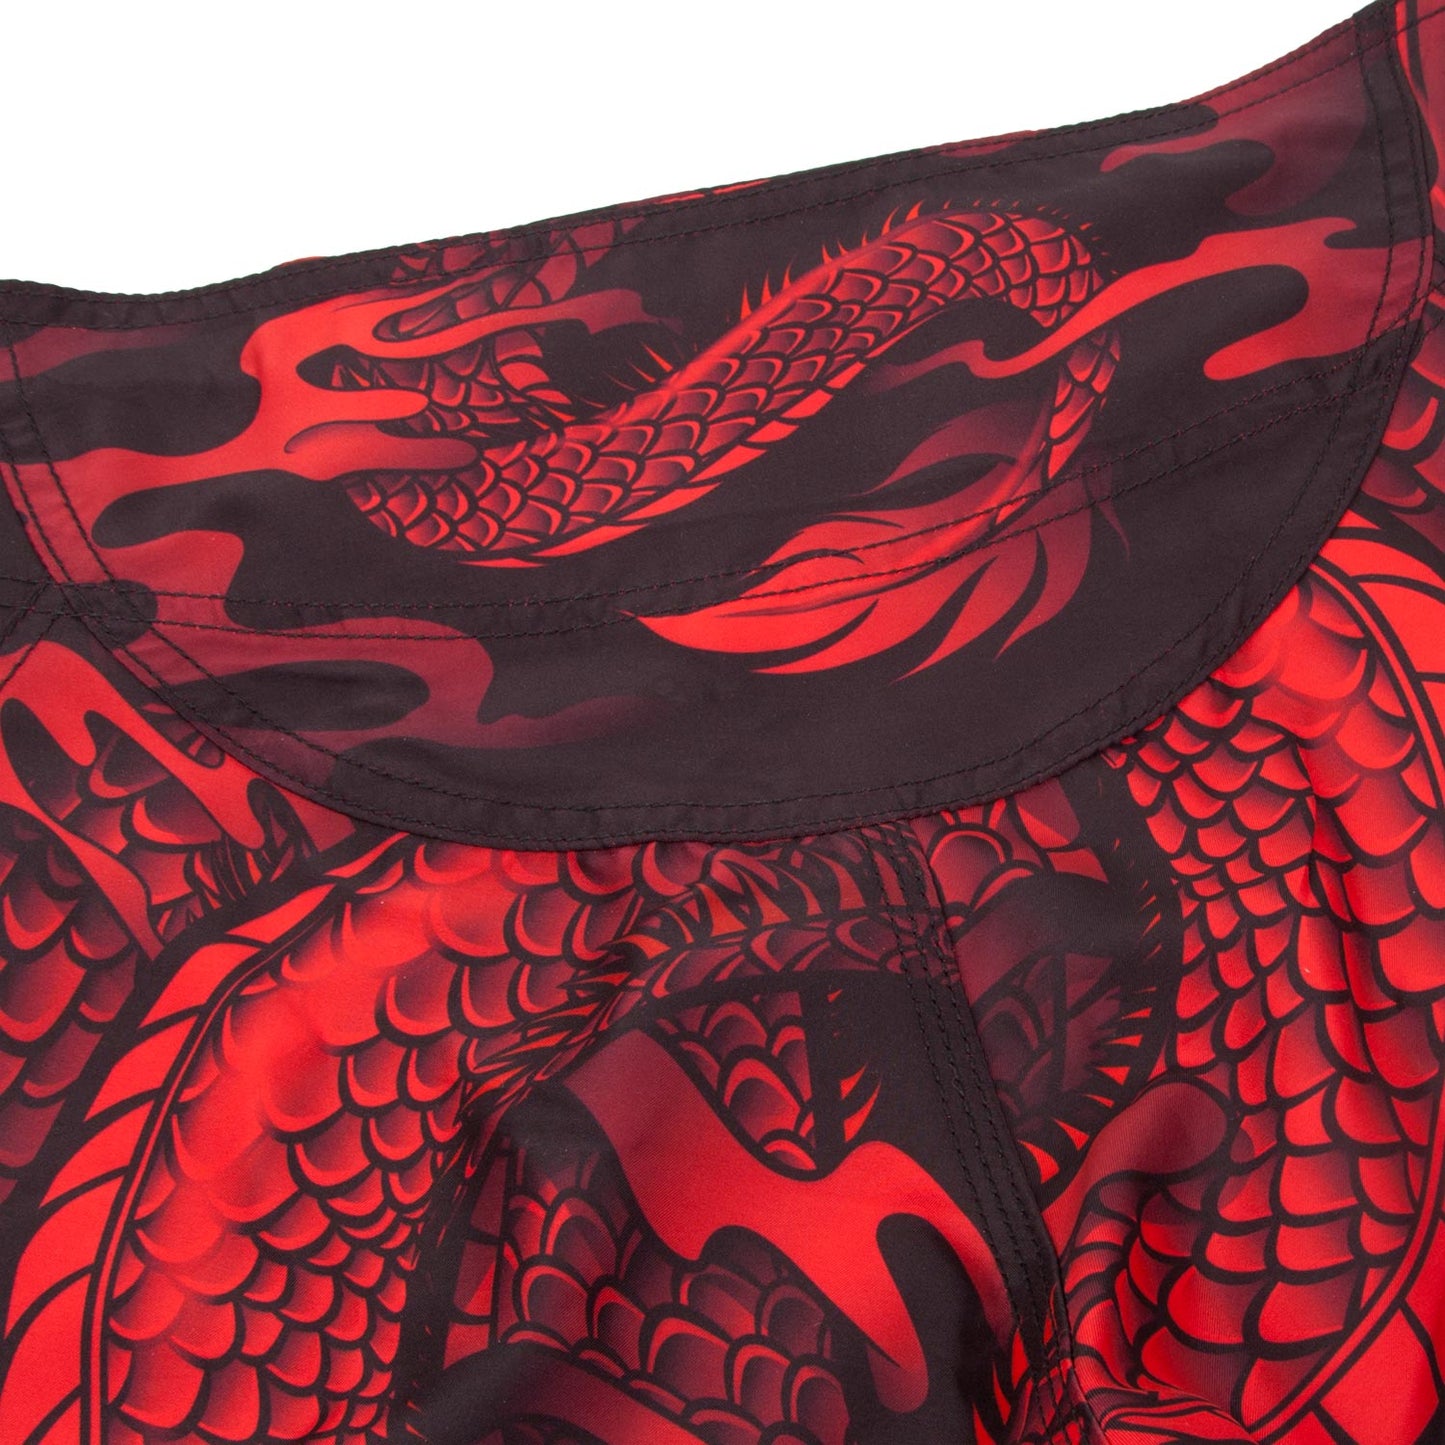 Pantaloncini da combattimento Venum Dragon's Flight -  Nero/Rosso